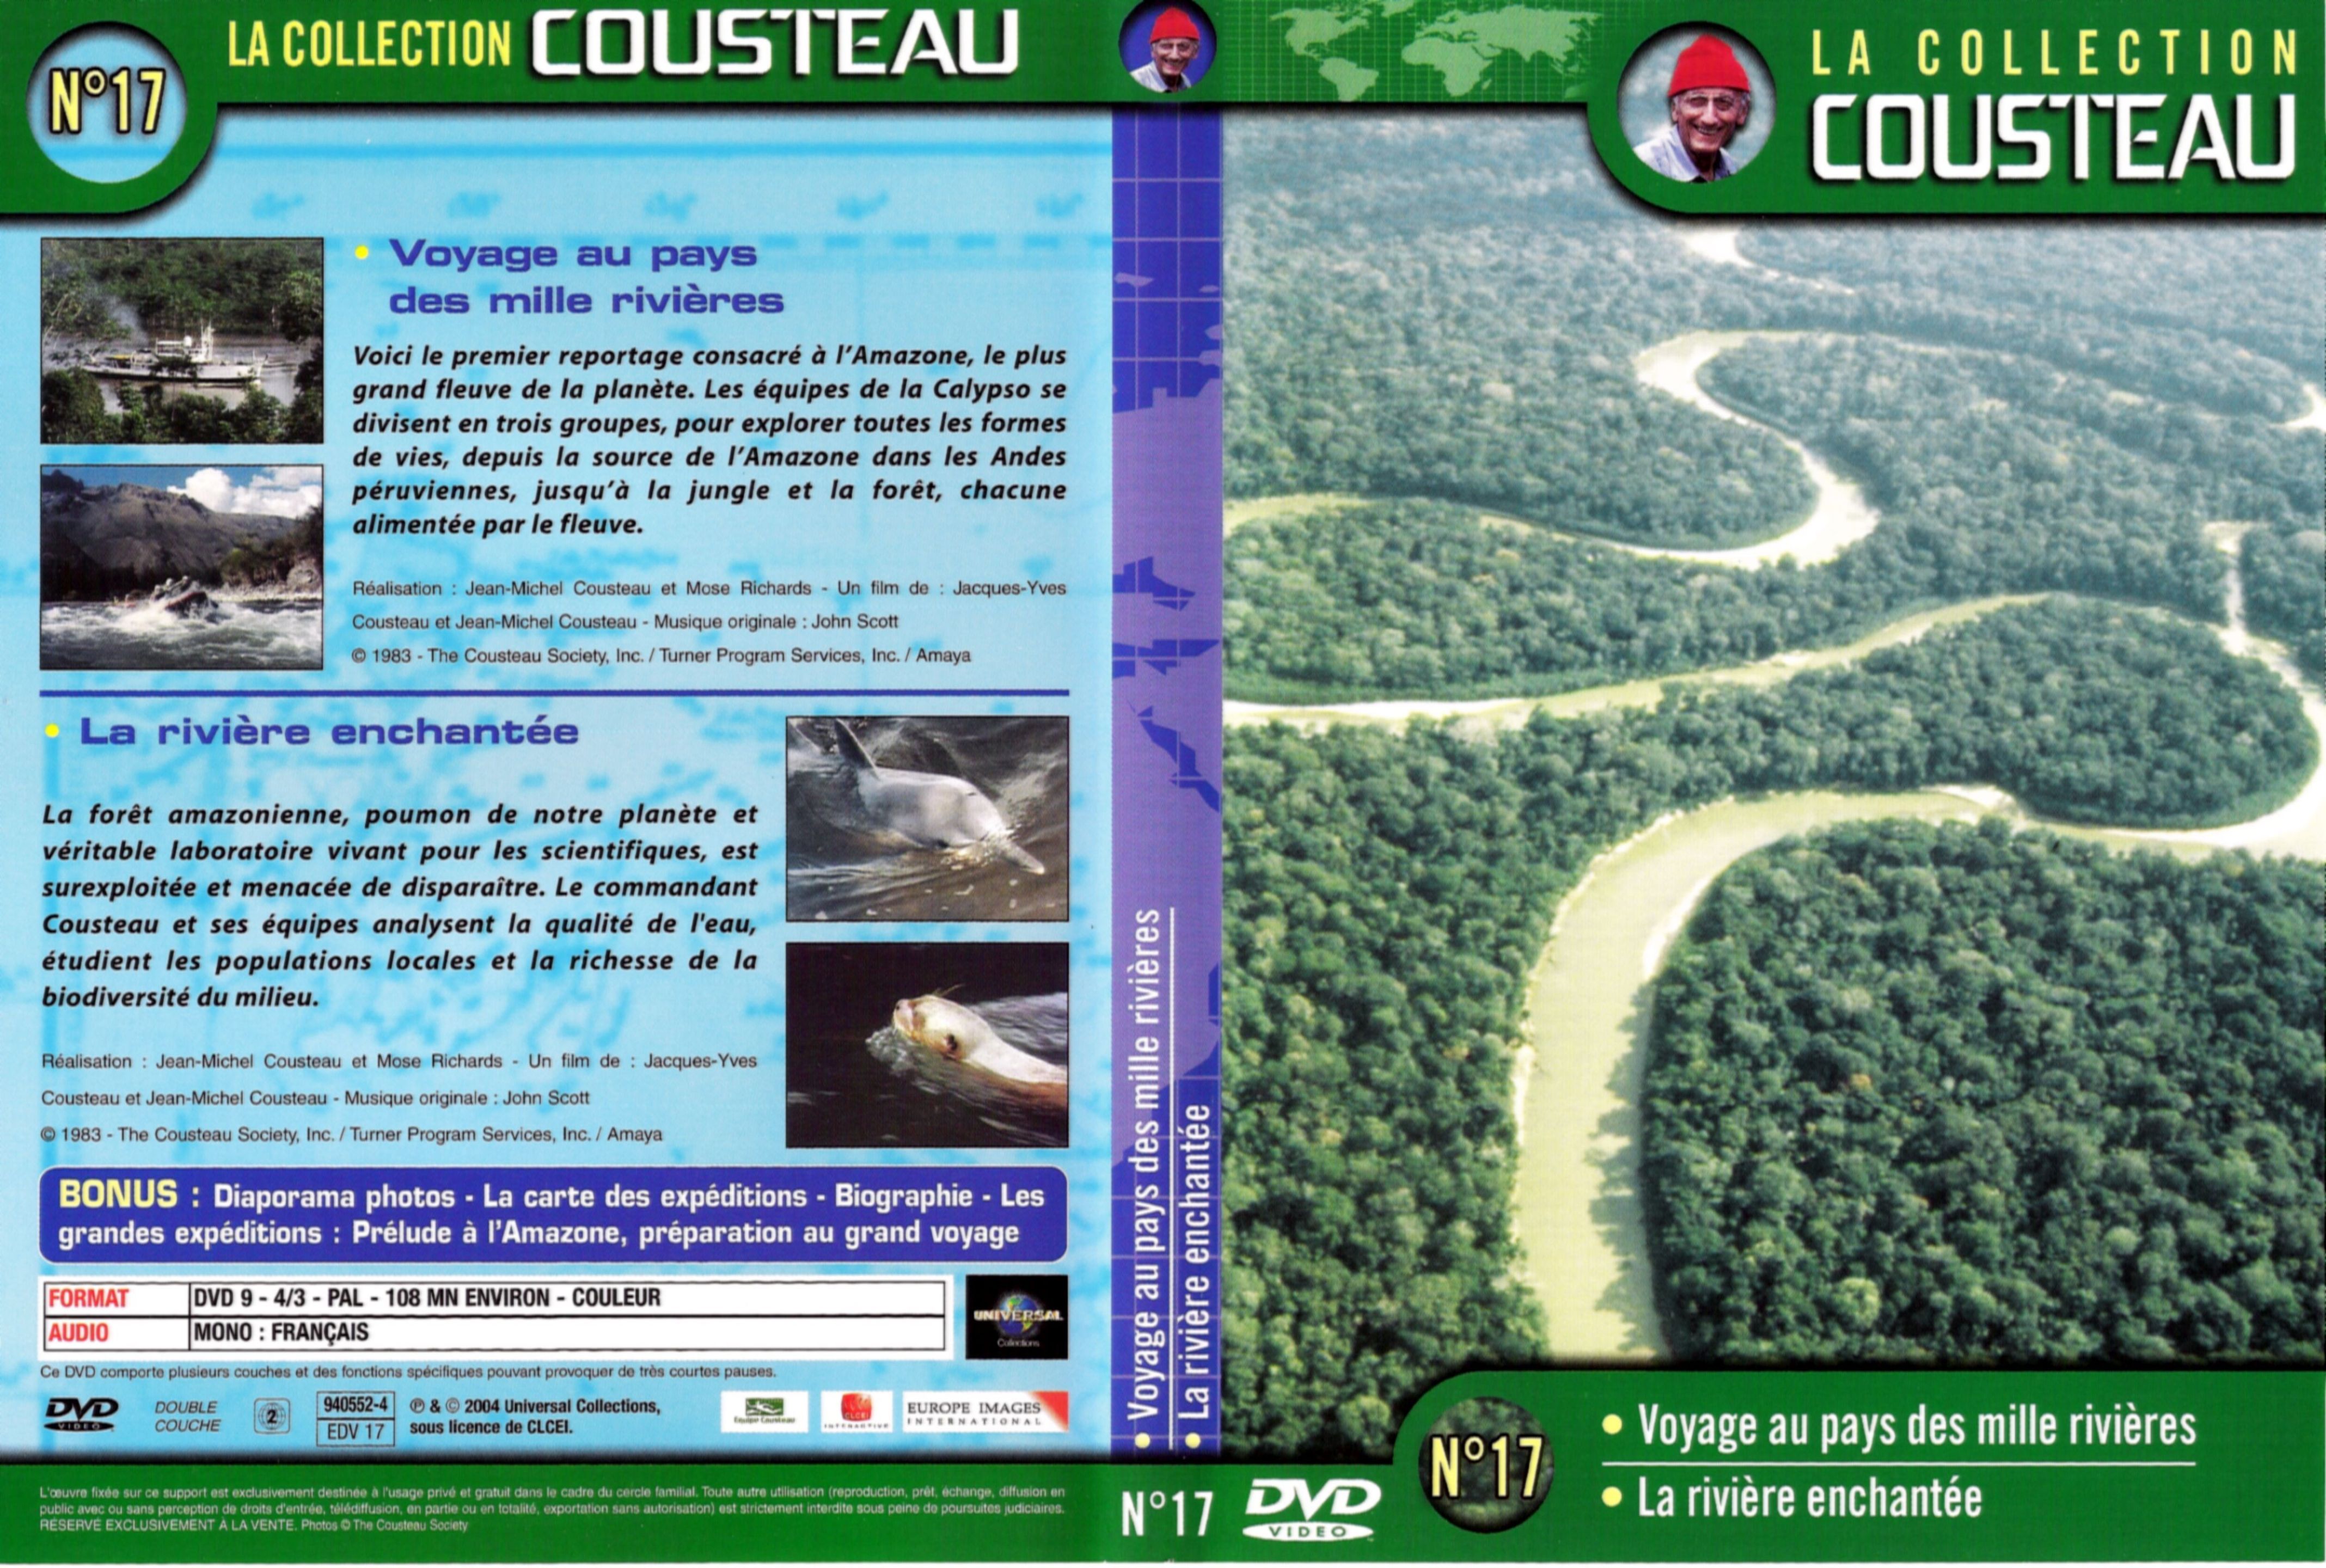 Jaquette DVD Cousteau Collection vol 17